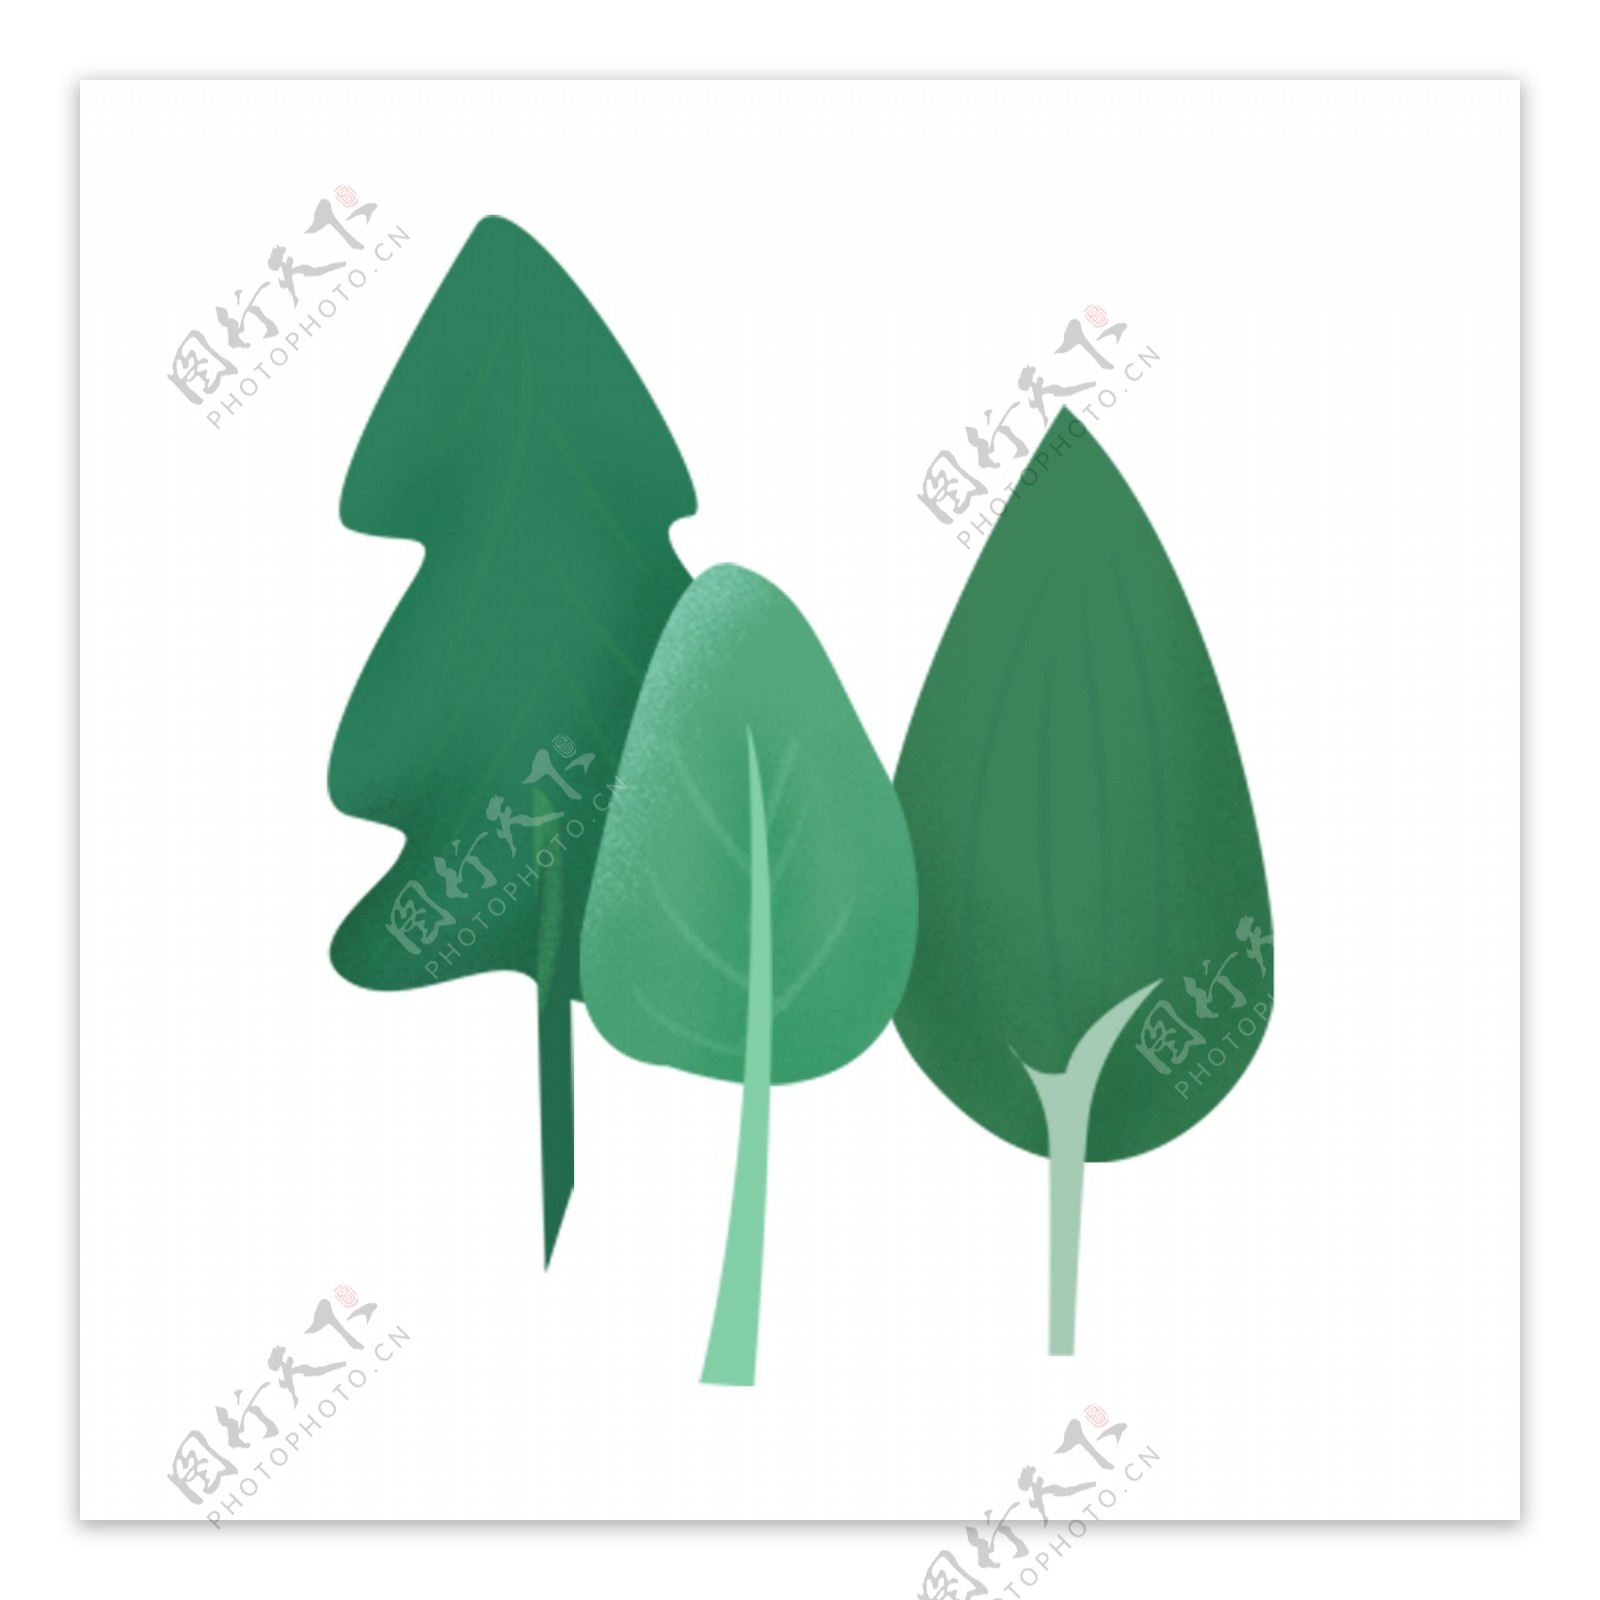 手绘的绿色树木元素素材